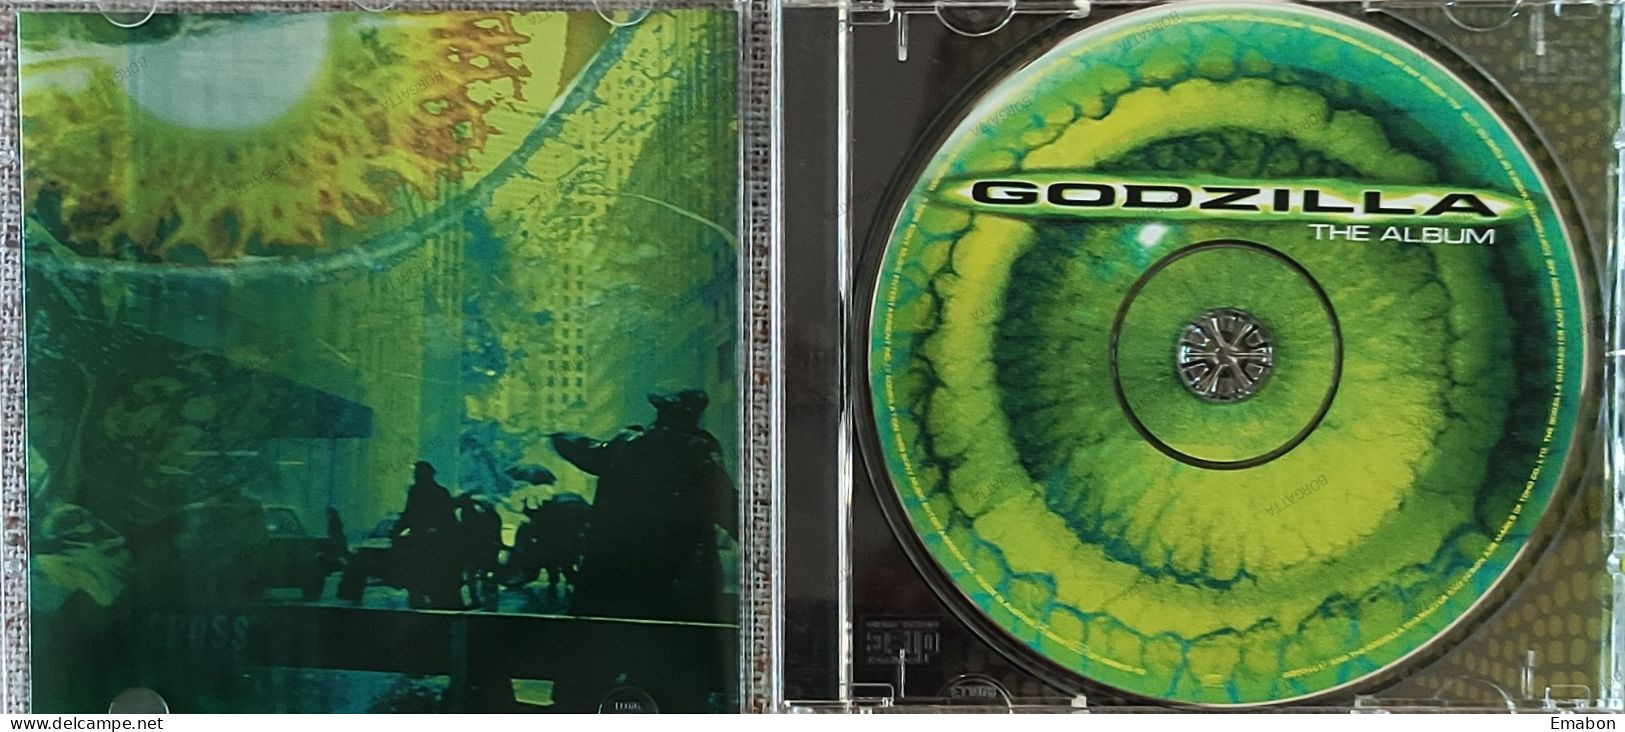 BORGATTA - FILM MUSIC  - Cd   THE ALBUM GODZILLA - EPIC/SONY 1998- USATO In Buono Stato - Musica Di Film